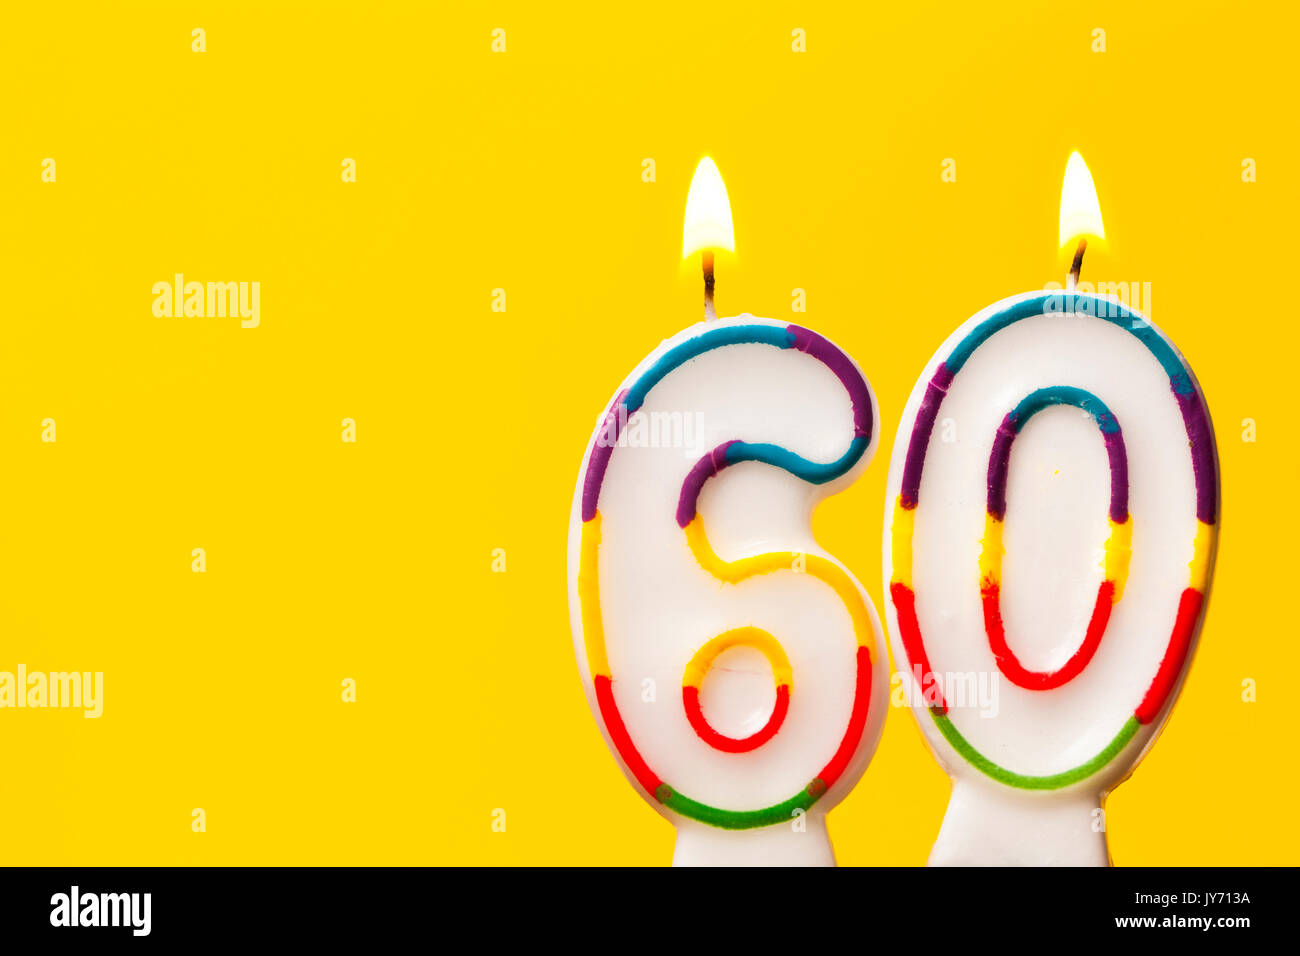 Nummer 60 Geburtstag Kerze Gegen Einen Hellen Hintergrund Gelb Stockfotografie Alamy